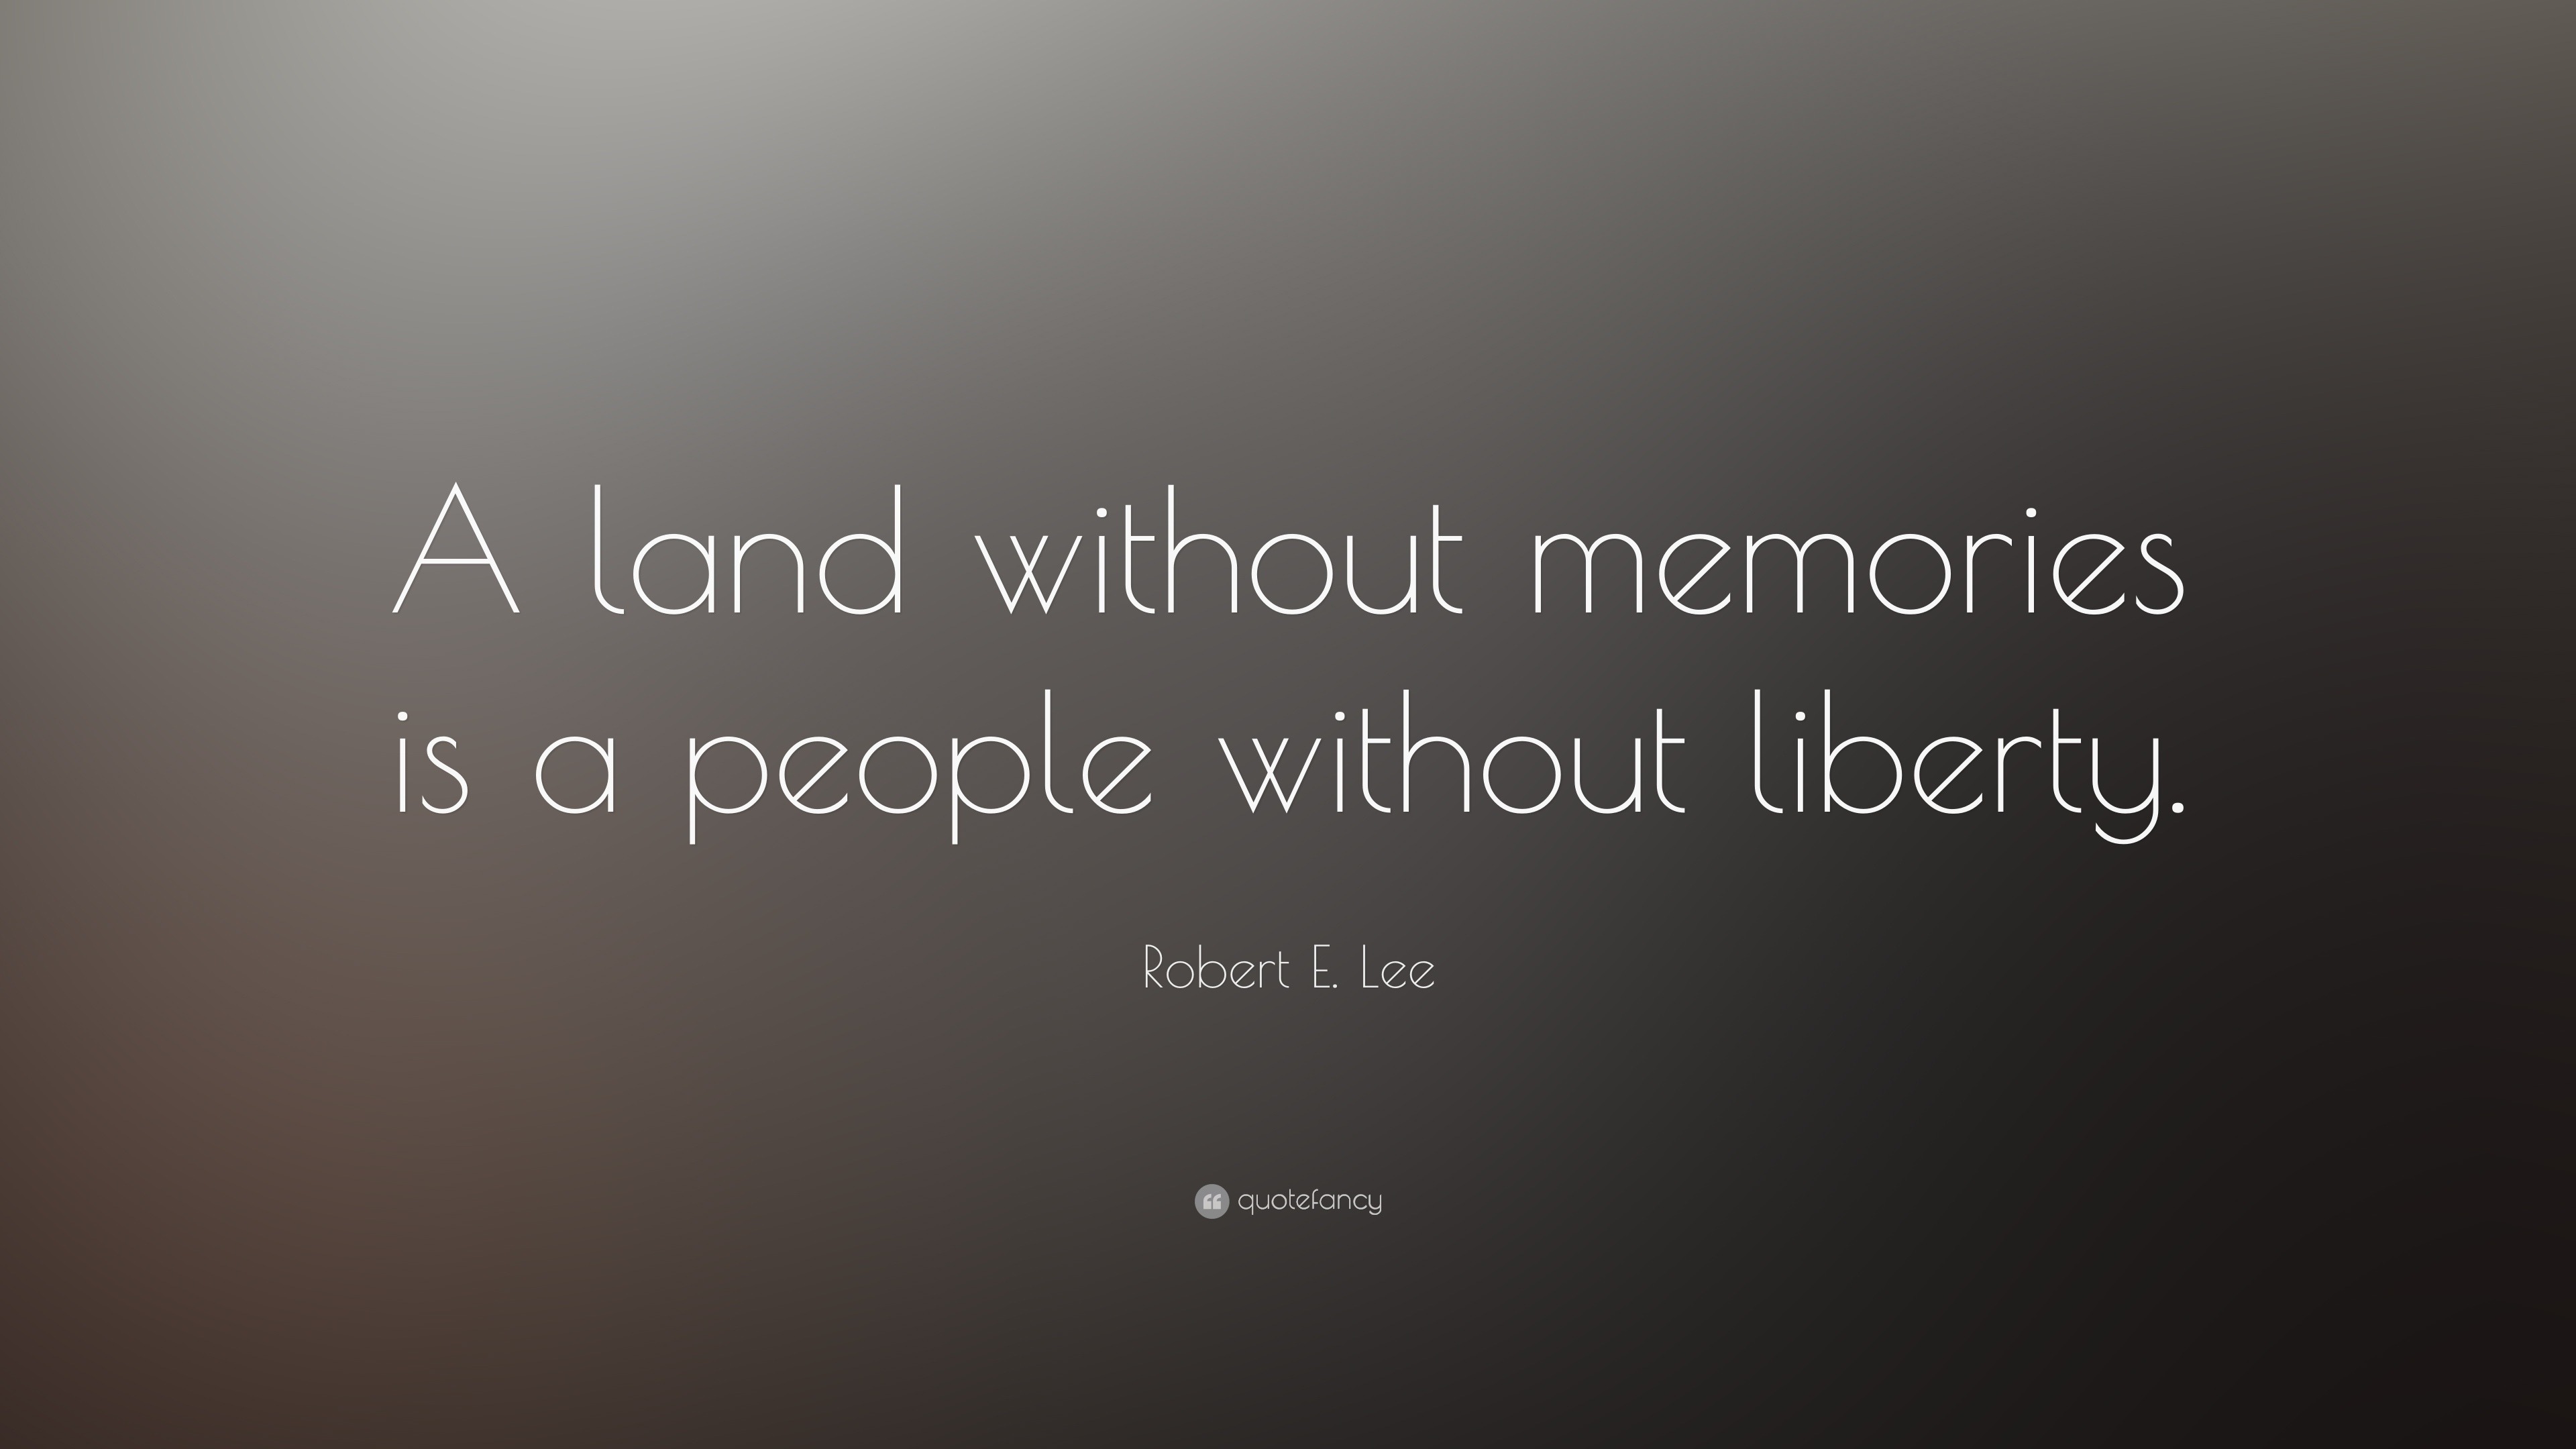 Top 100 Robert E. Lee Quotes (2023 Update) - Quotefancy